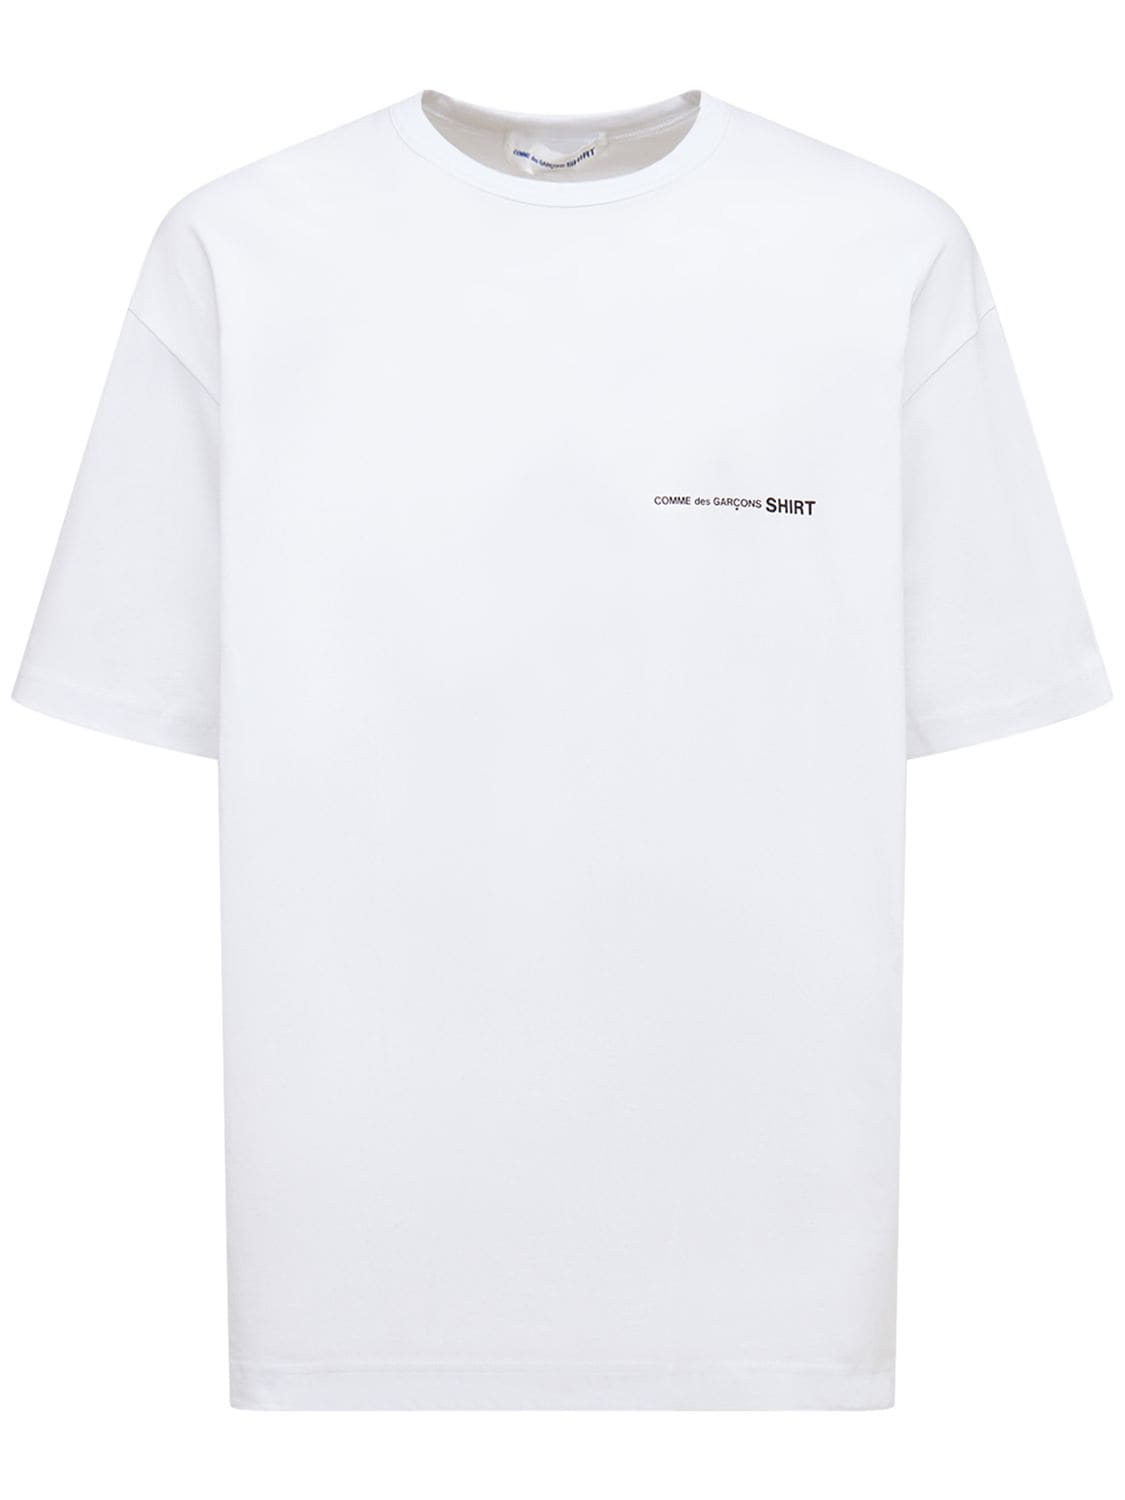 Logo Print Over Cotton Jersey T-shirt - COMME DES GARÇONS SHIRT - Modalova